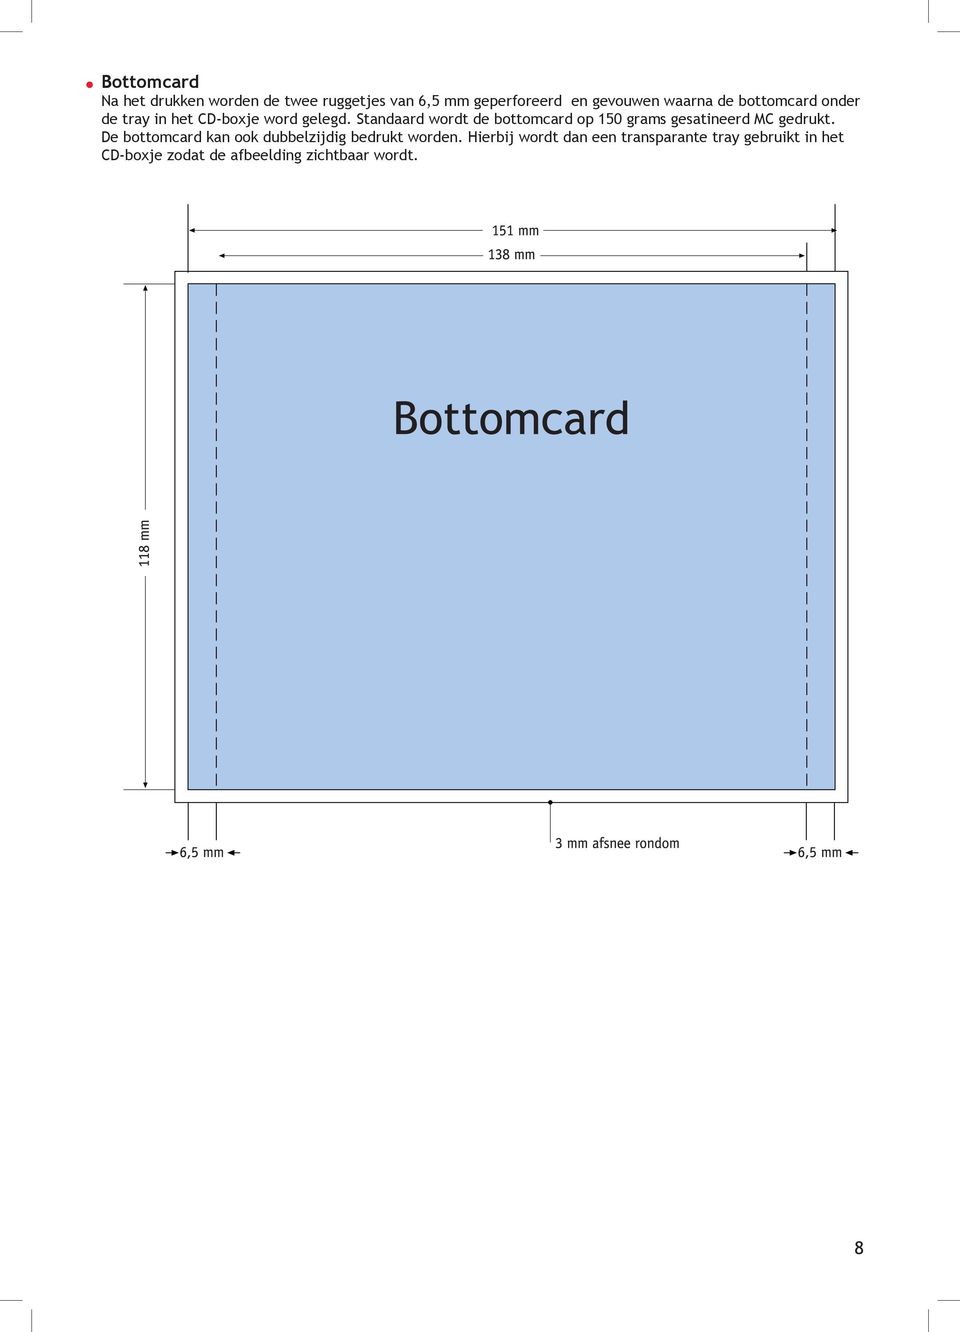 Standaard wordt de bottomcard op 150 grams gesatineerd MC gedrukt.